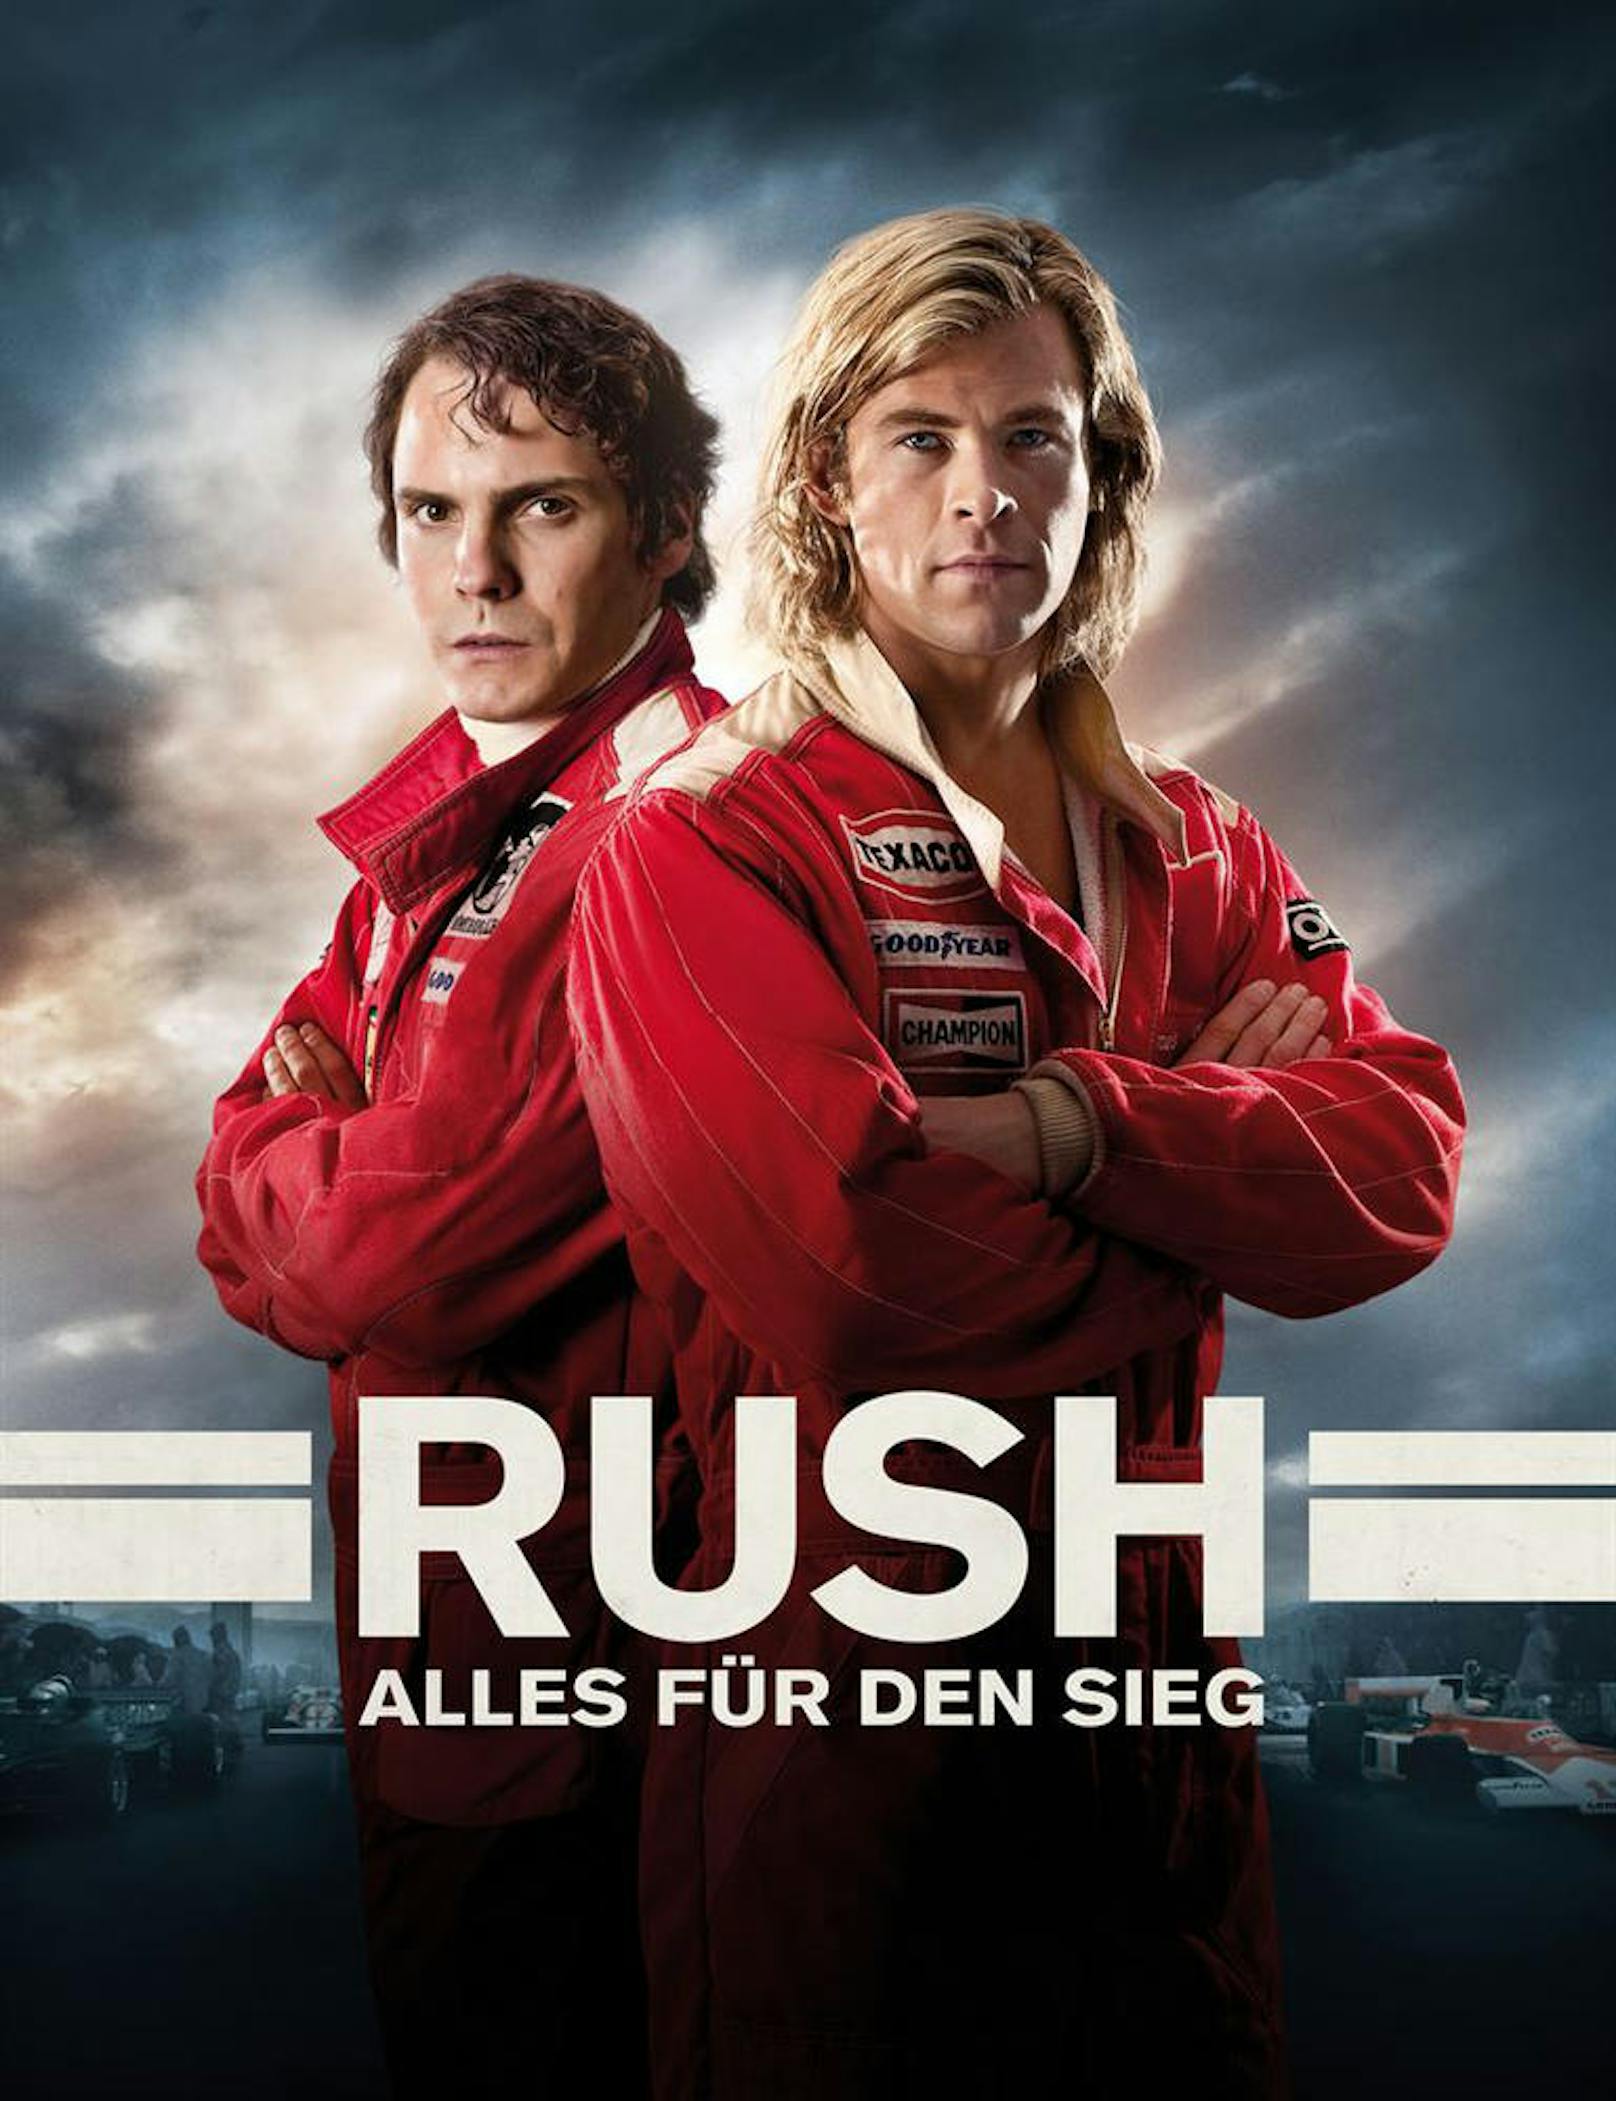 "Rush - Alles für den Sieg": Daniel Brühl und Chris Hemsworth